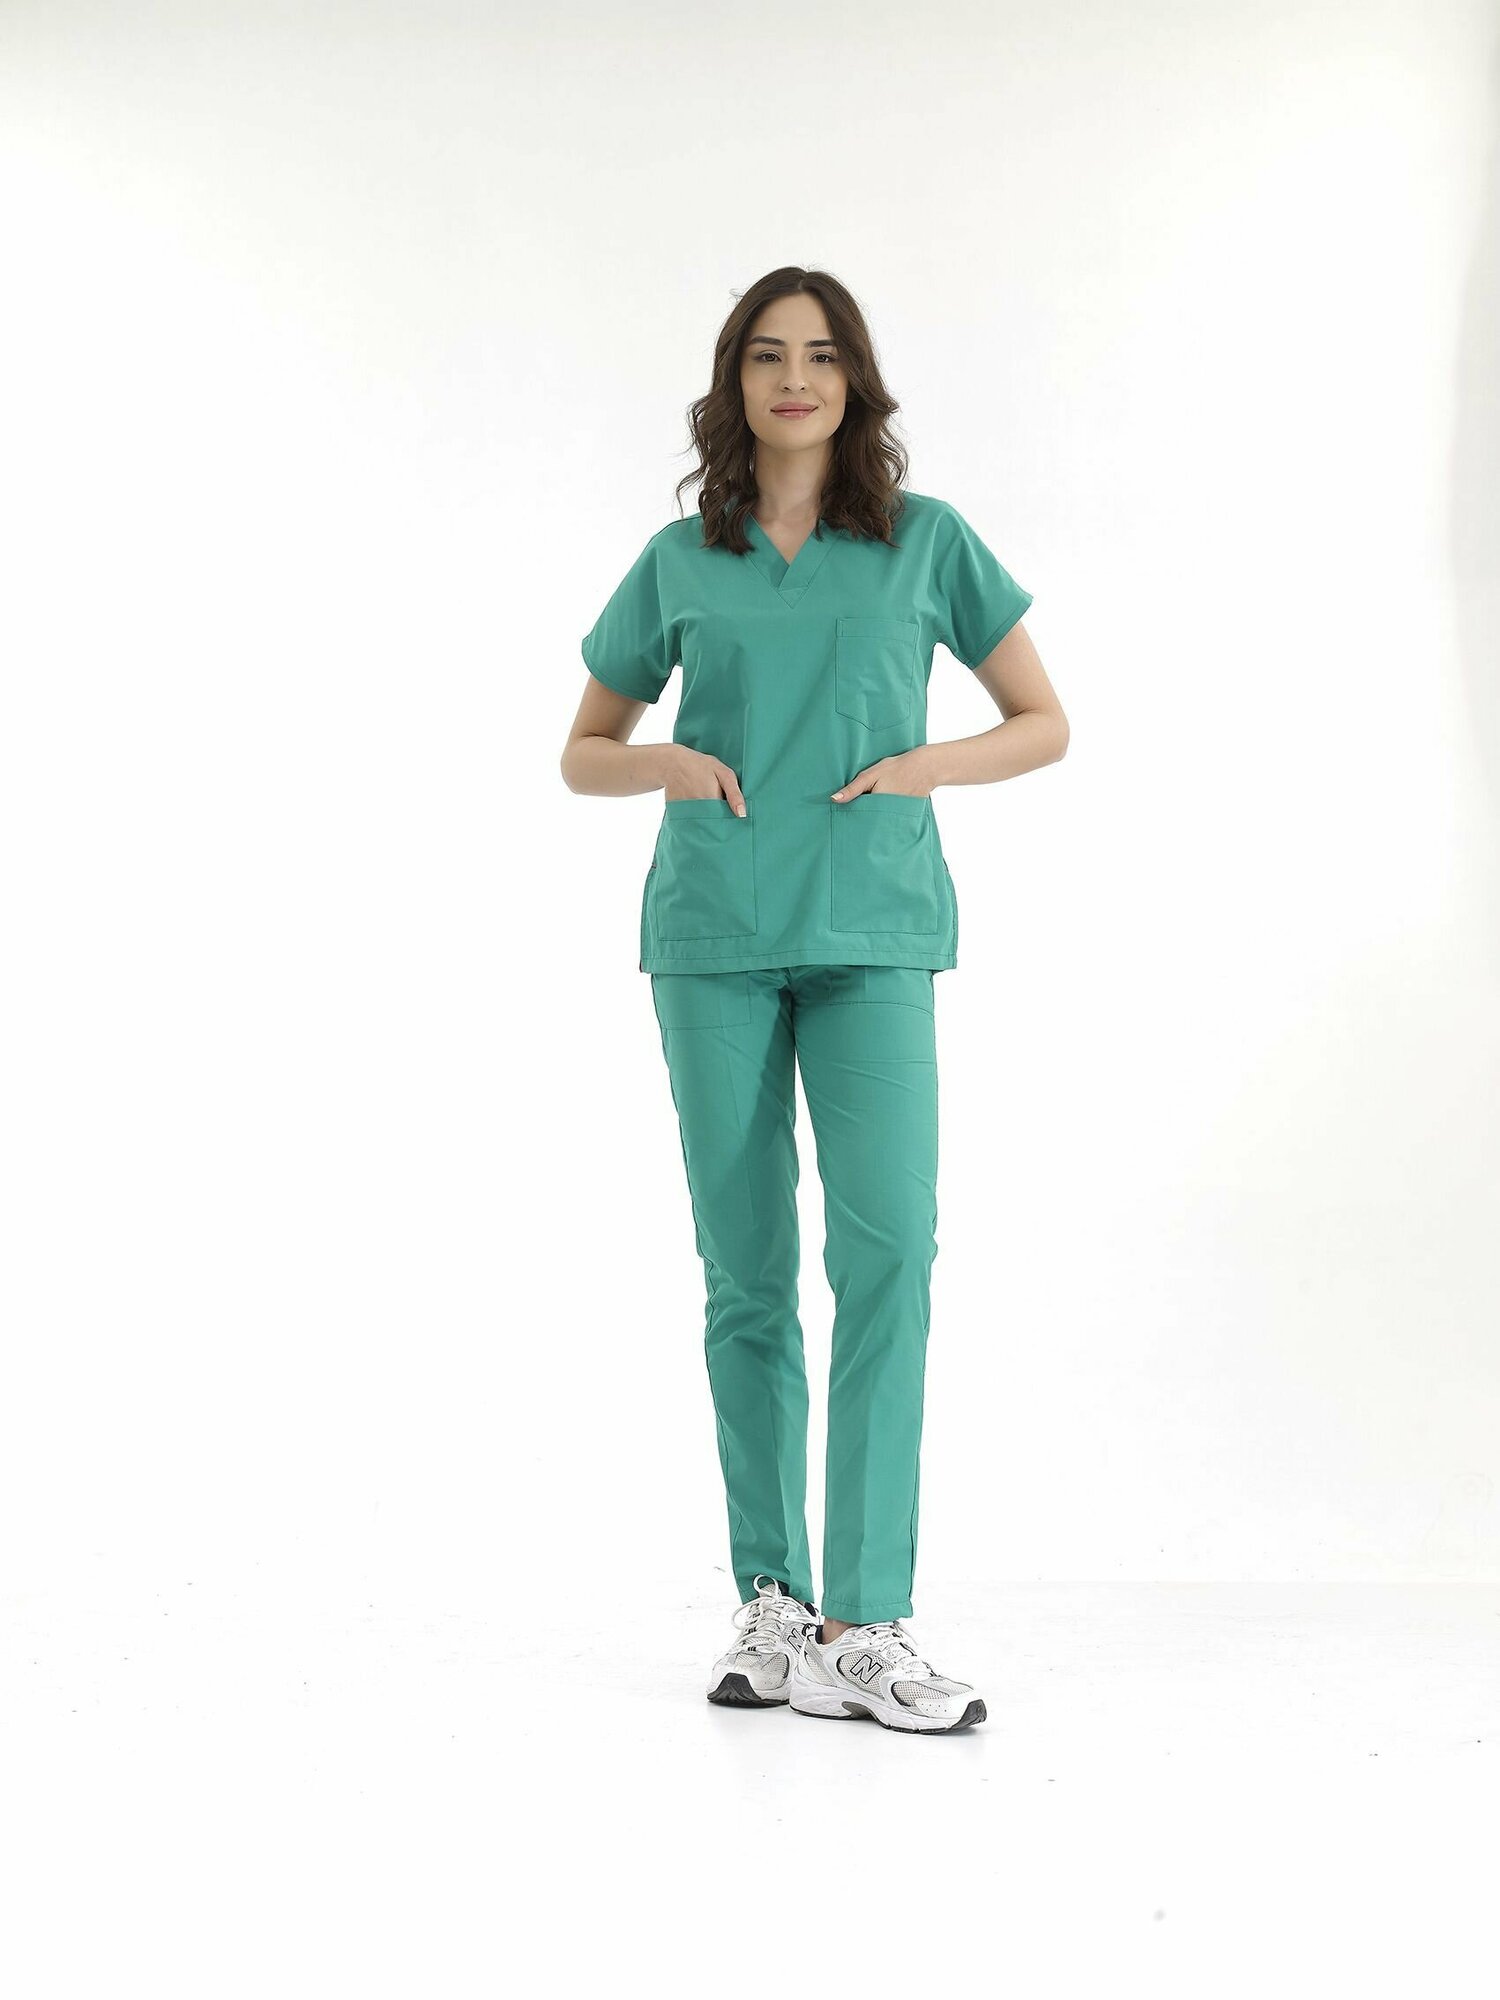 Медицинский костюм женский стрейч зеленый, до больших размеров, Сizgimedikal Uniforma, Турция